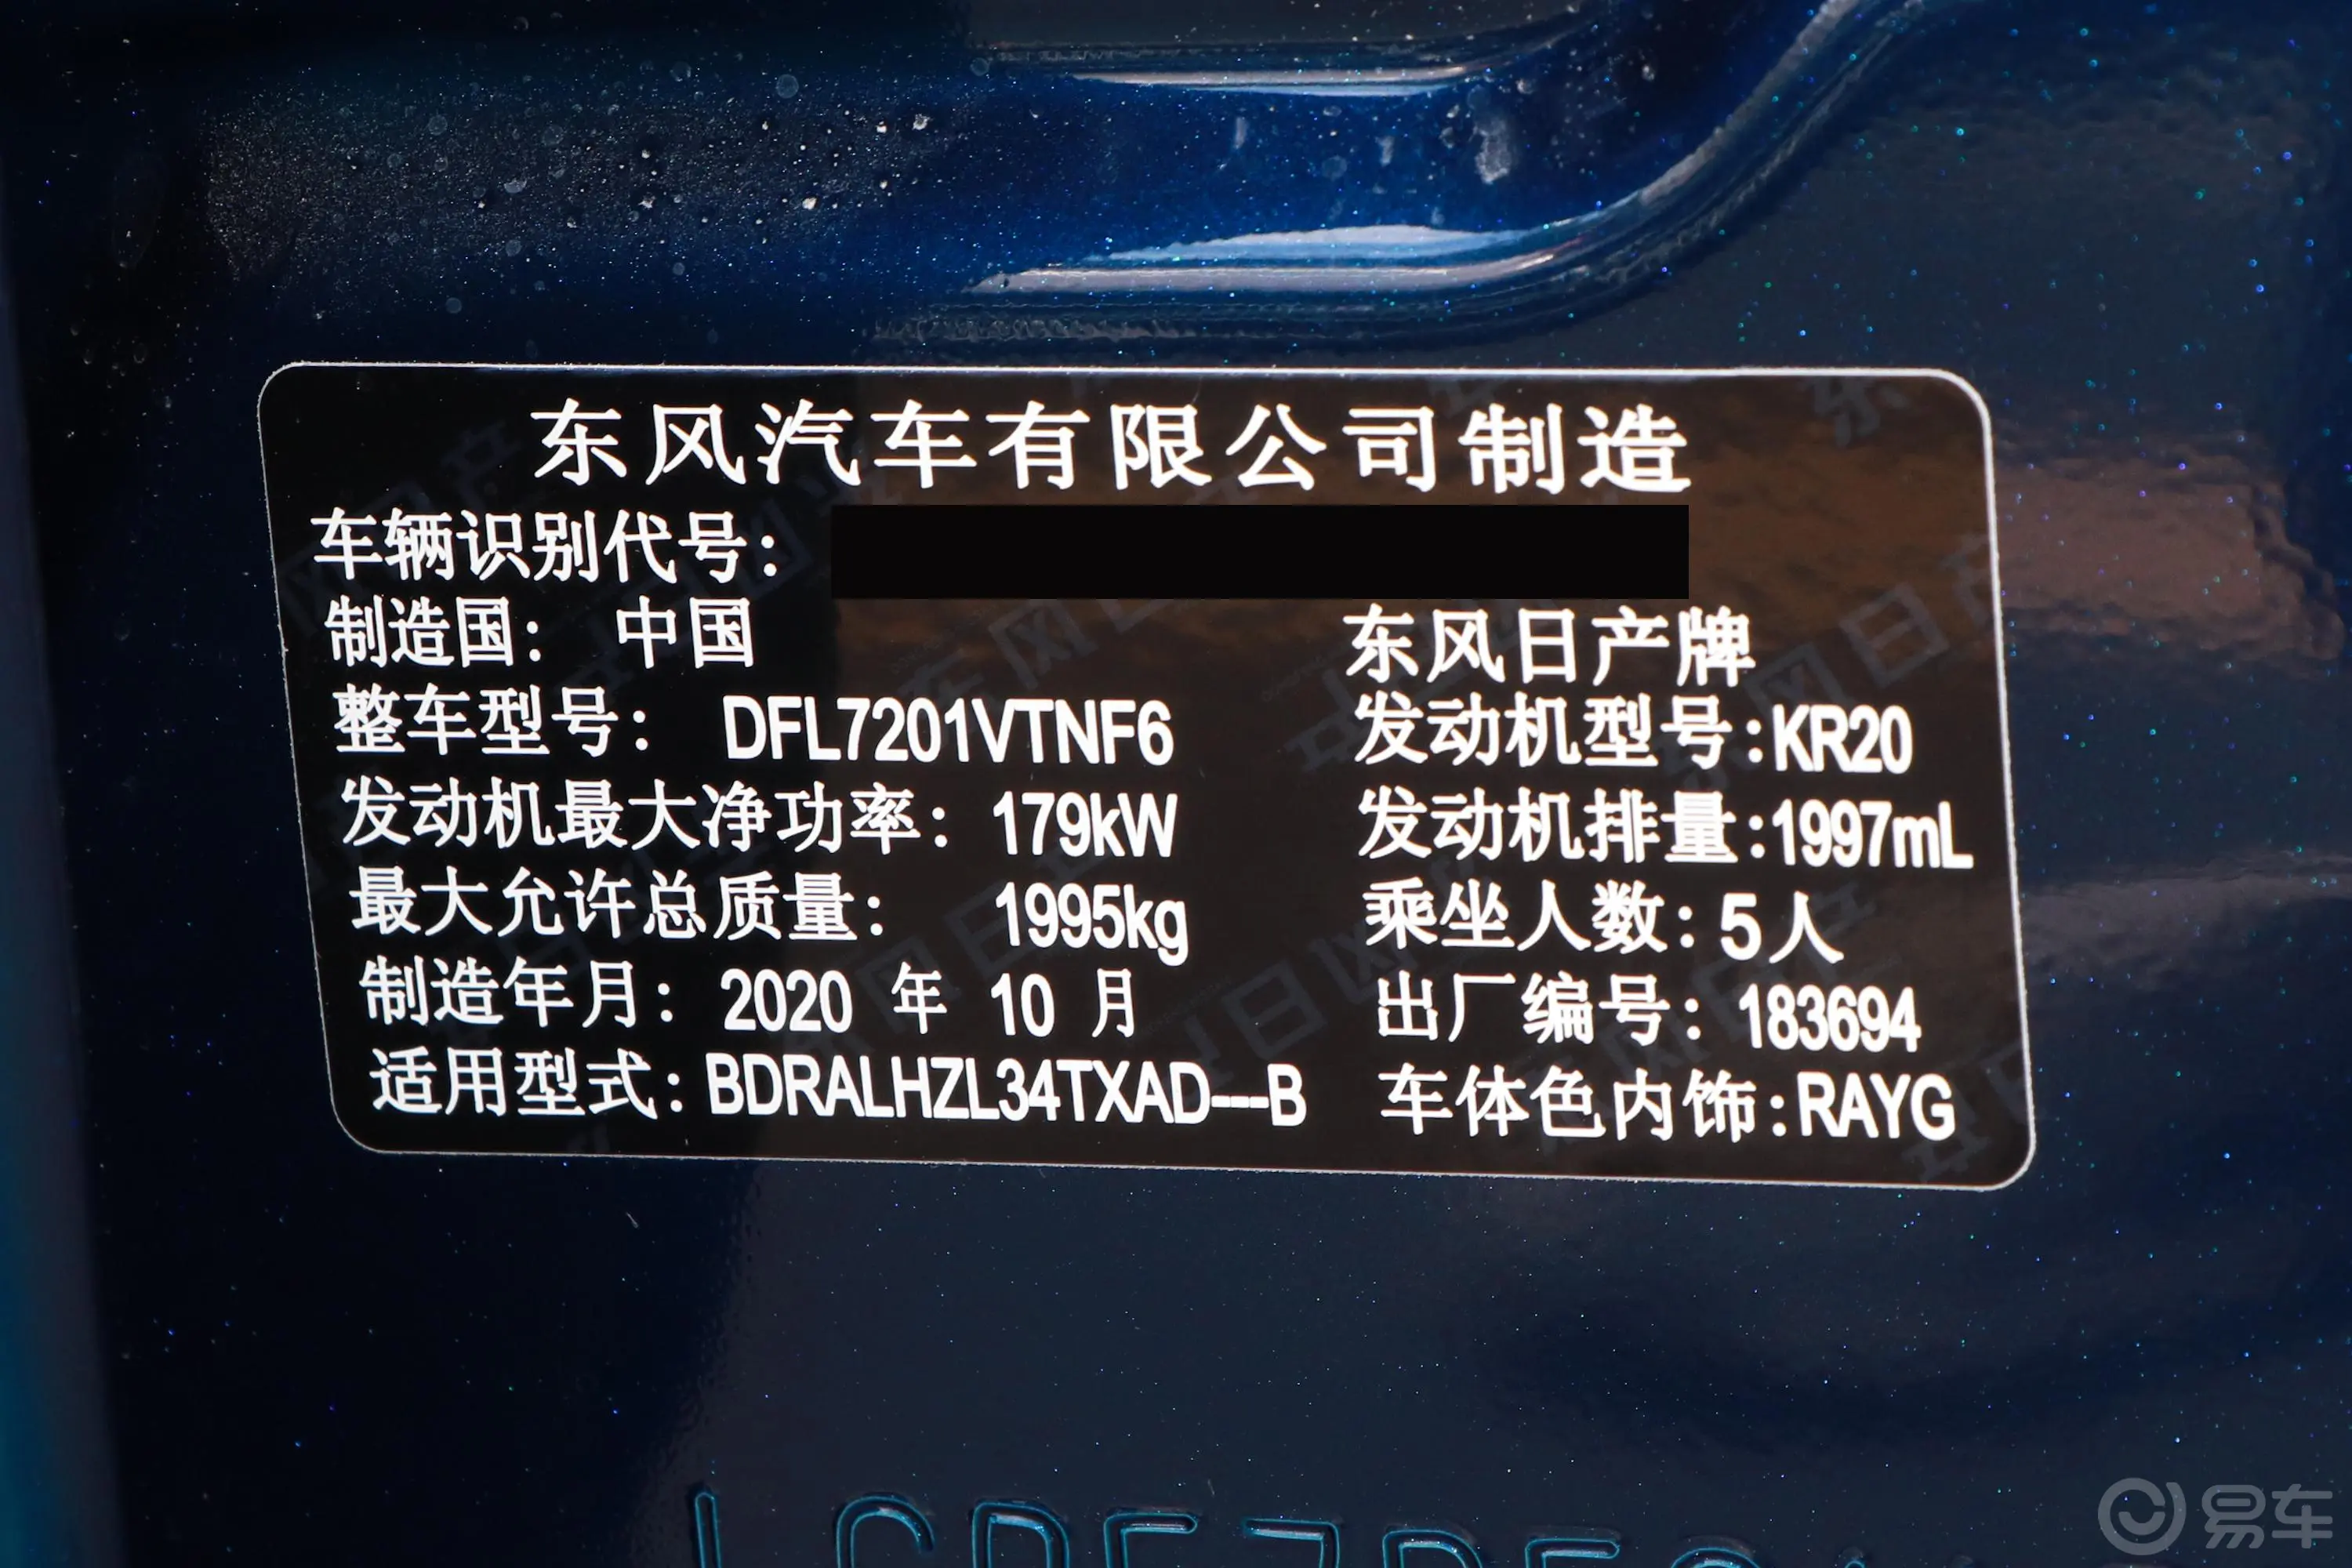 天籁2.0T XL Upper AD1 智享领航版车辆信息铭牌